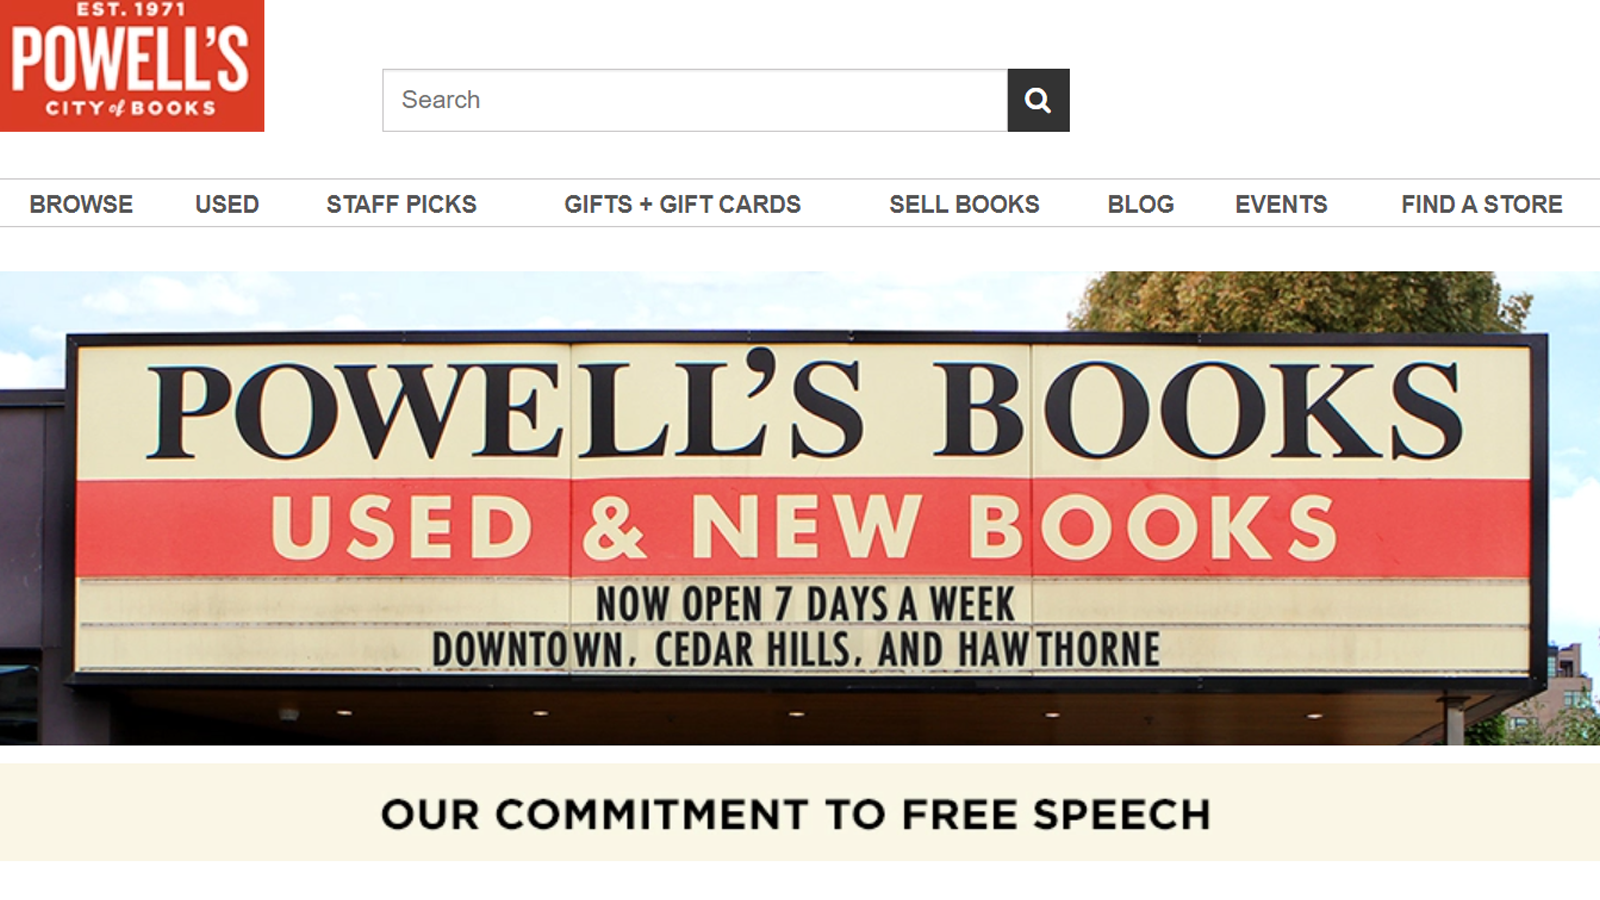 Powell's Books, hiệu sách độc lập lớn nhất thế giới